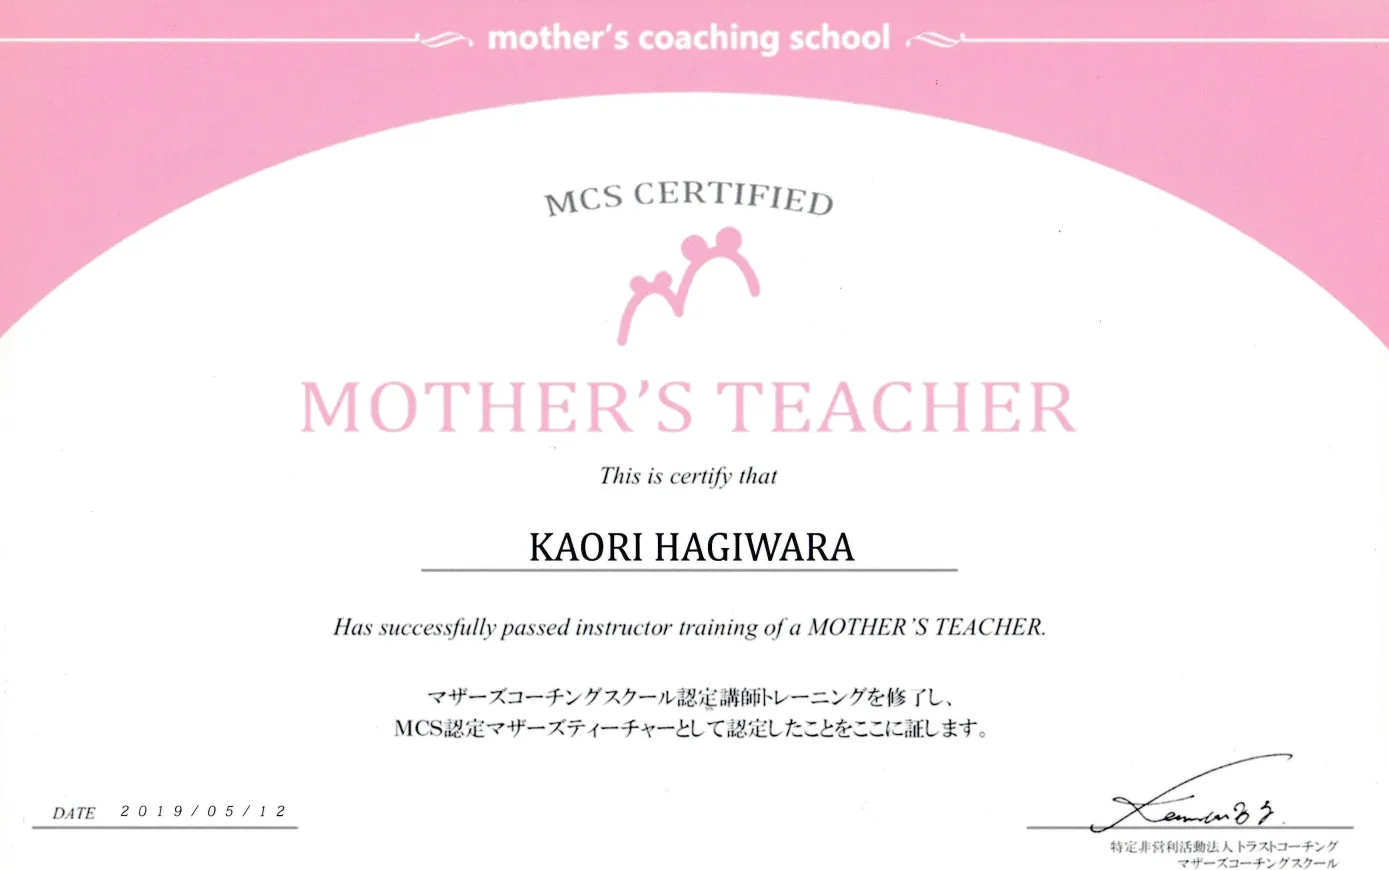 MOTHER'S TEACHER